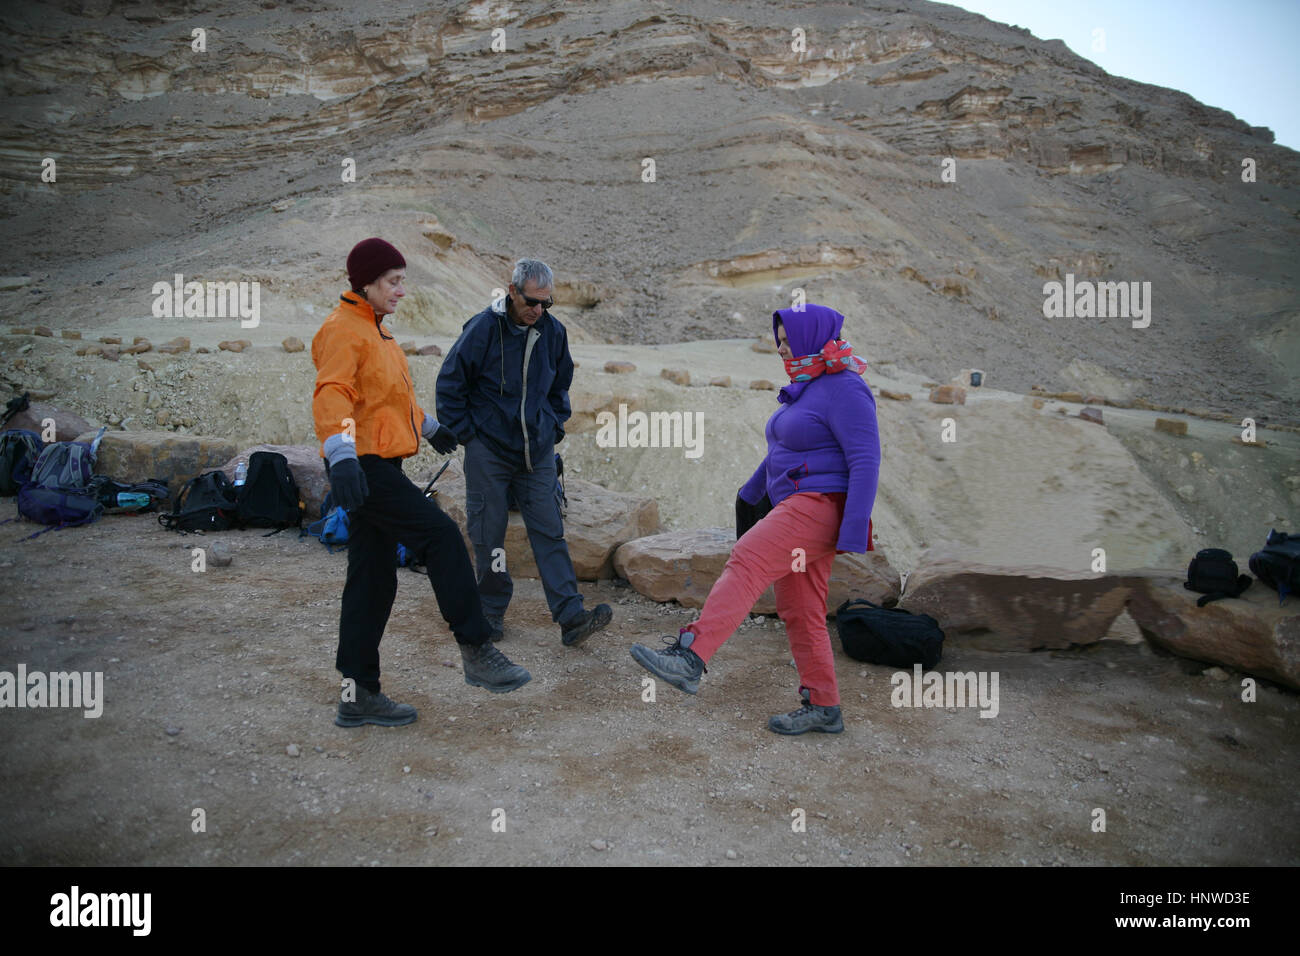 Il congelamento senior citizen escursionisti vestito nella fredda mattina fare tai chi per riscaldarsi prima di iniziare una faticosa escursione. Makhtesh Ramon, Negev, Israele. Foto Stock